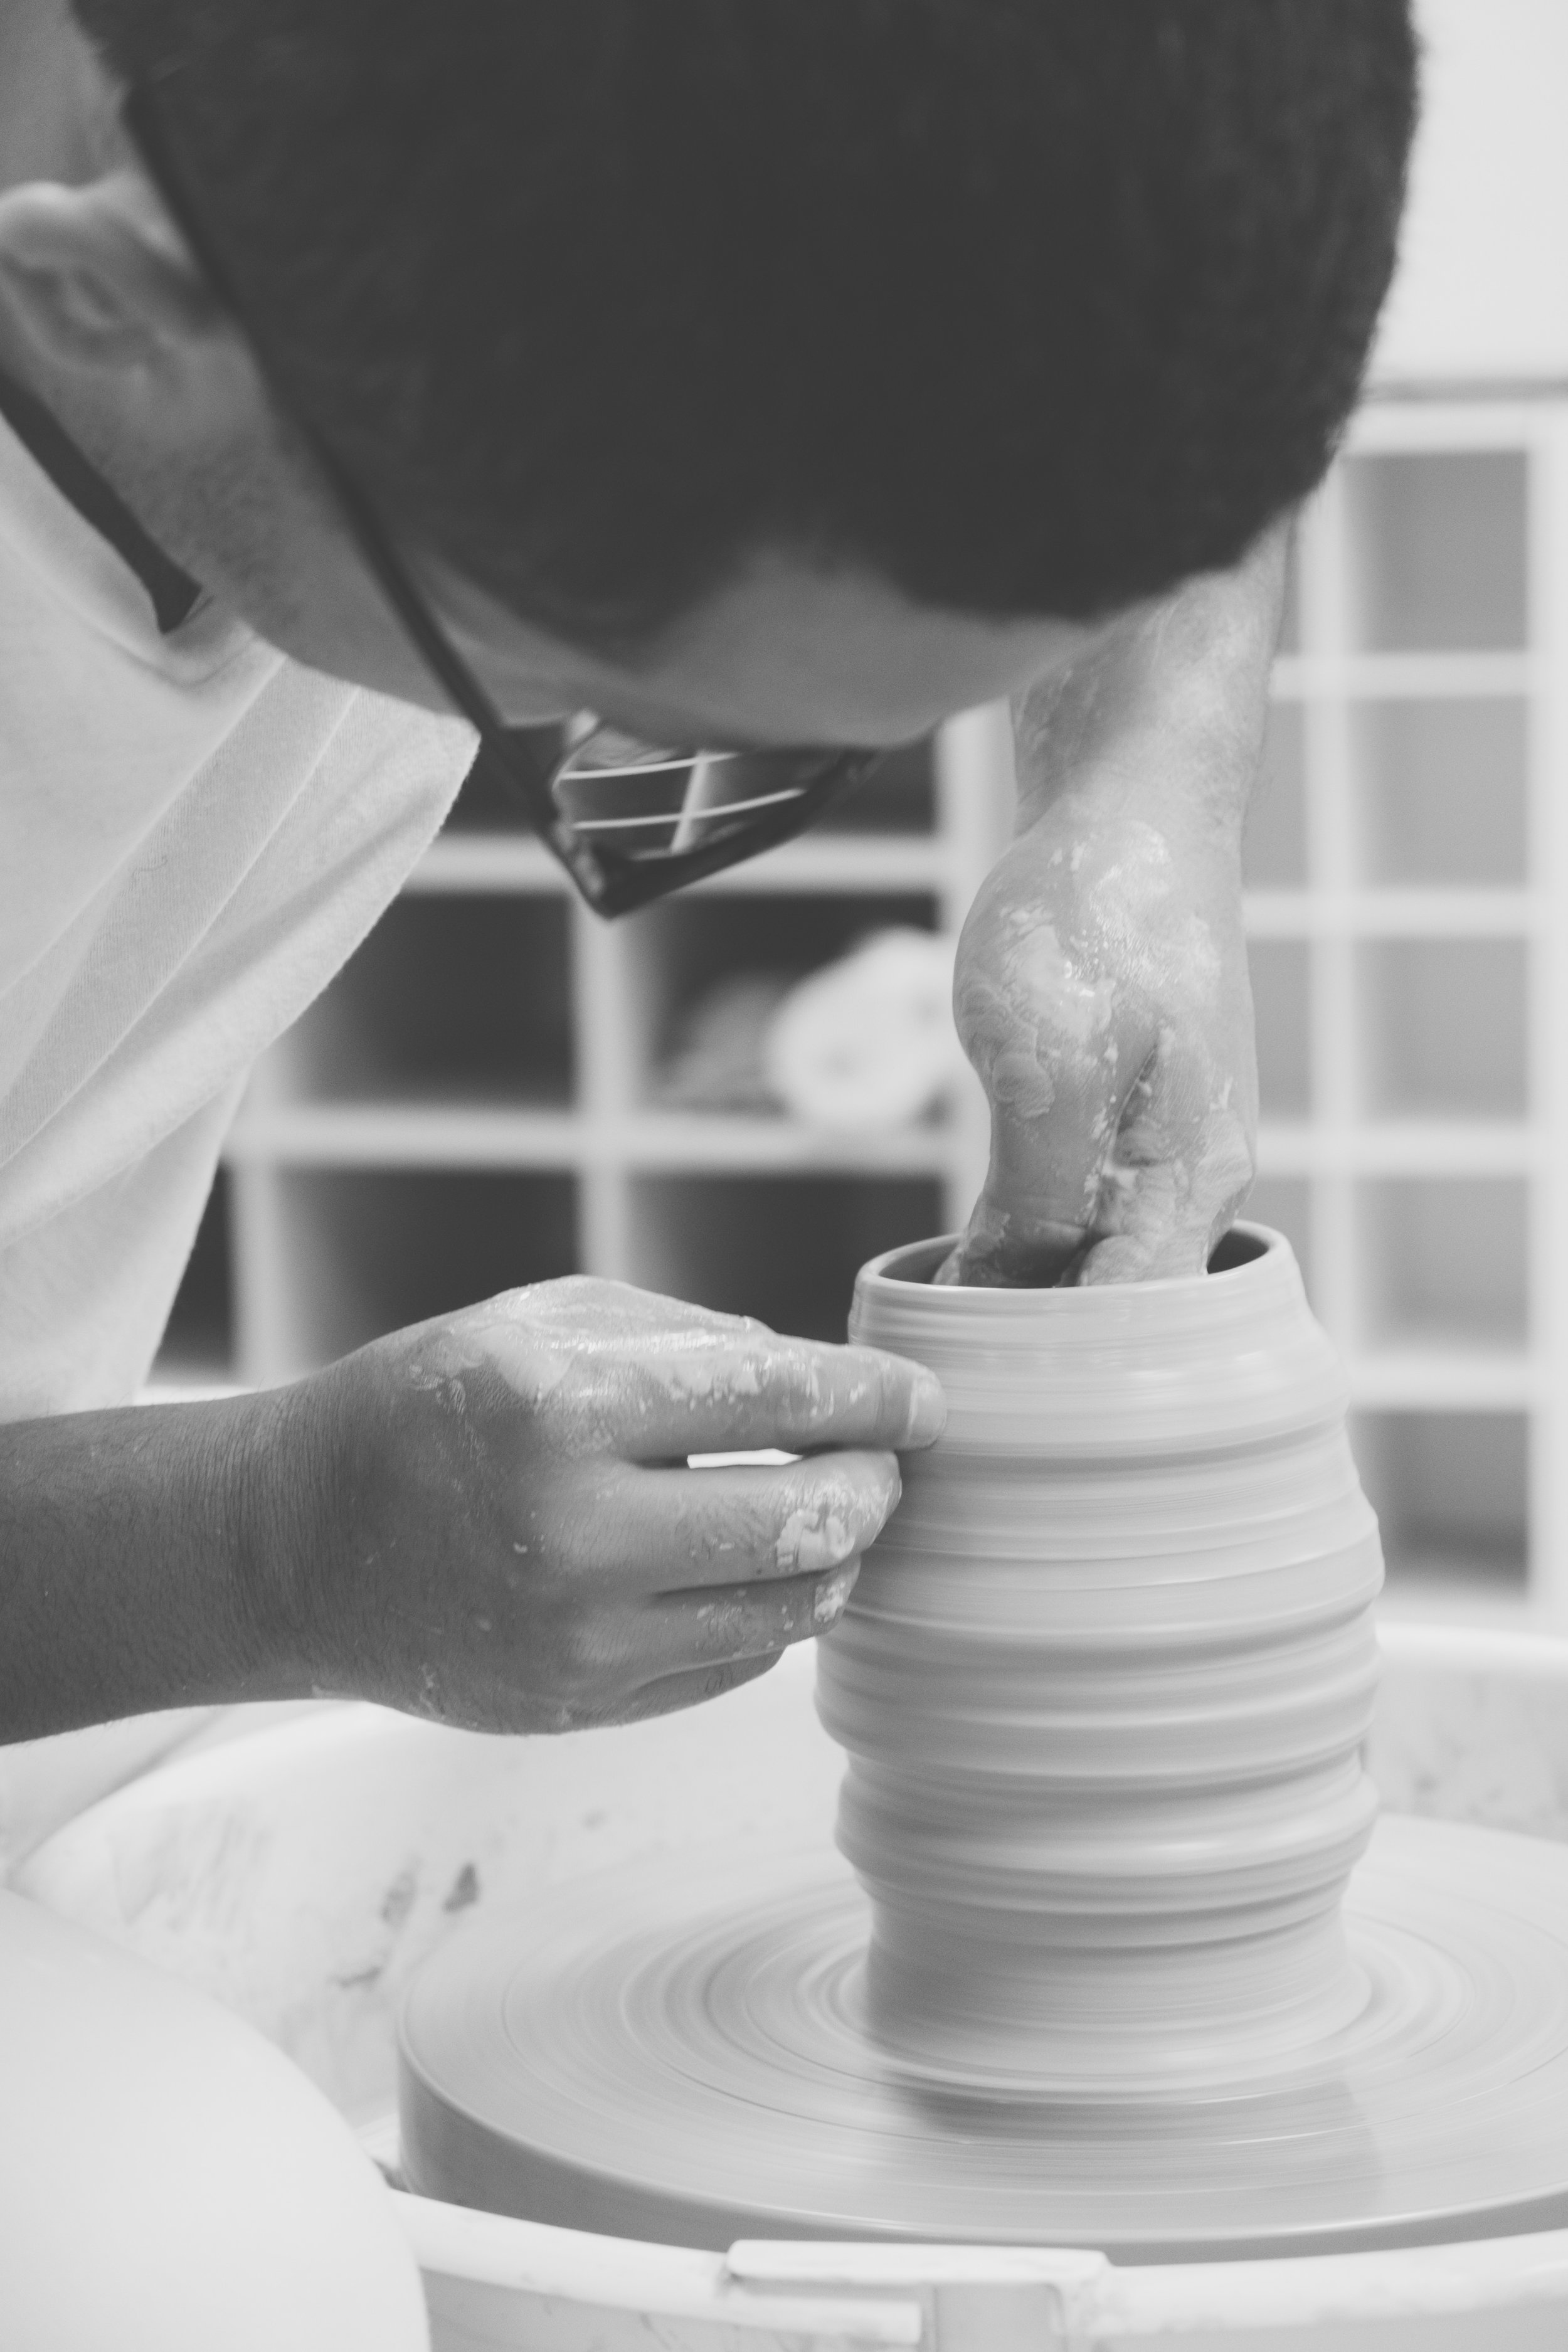 MSCR Arts Programs—Pottery